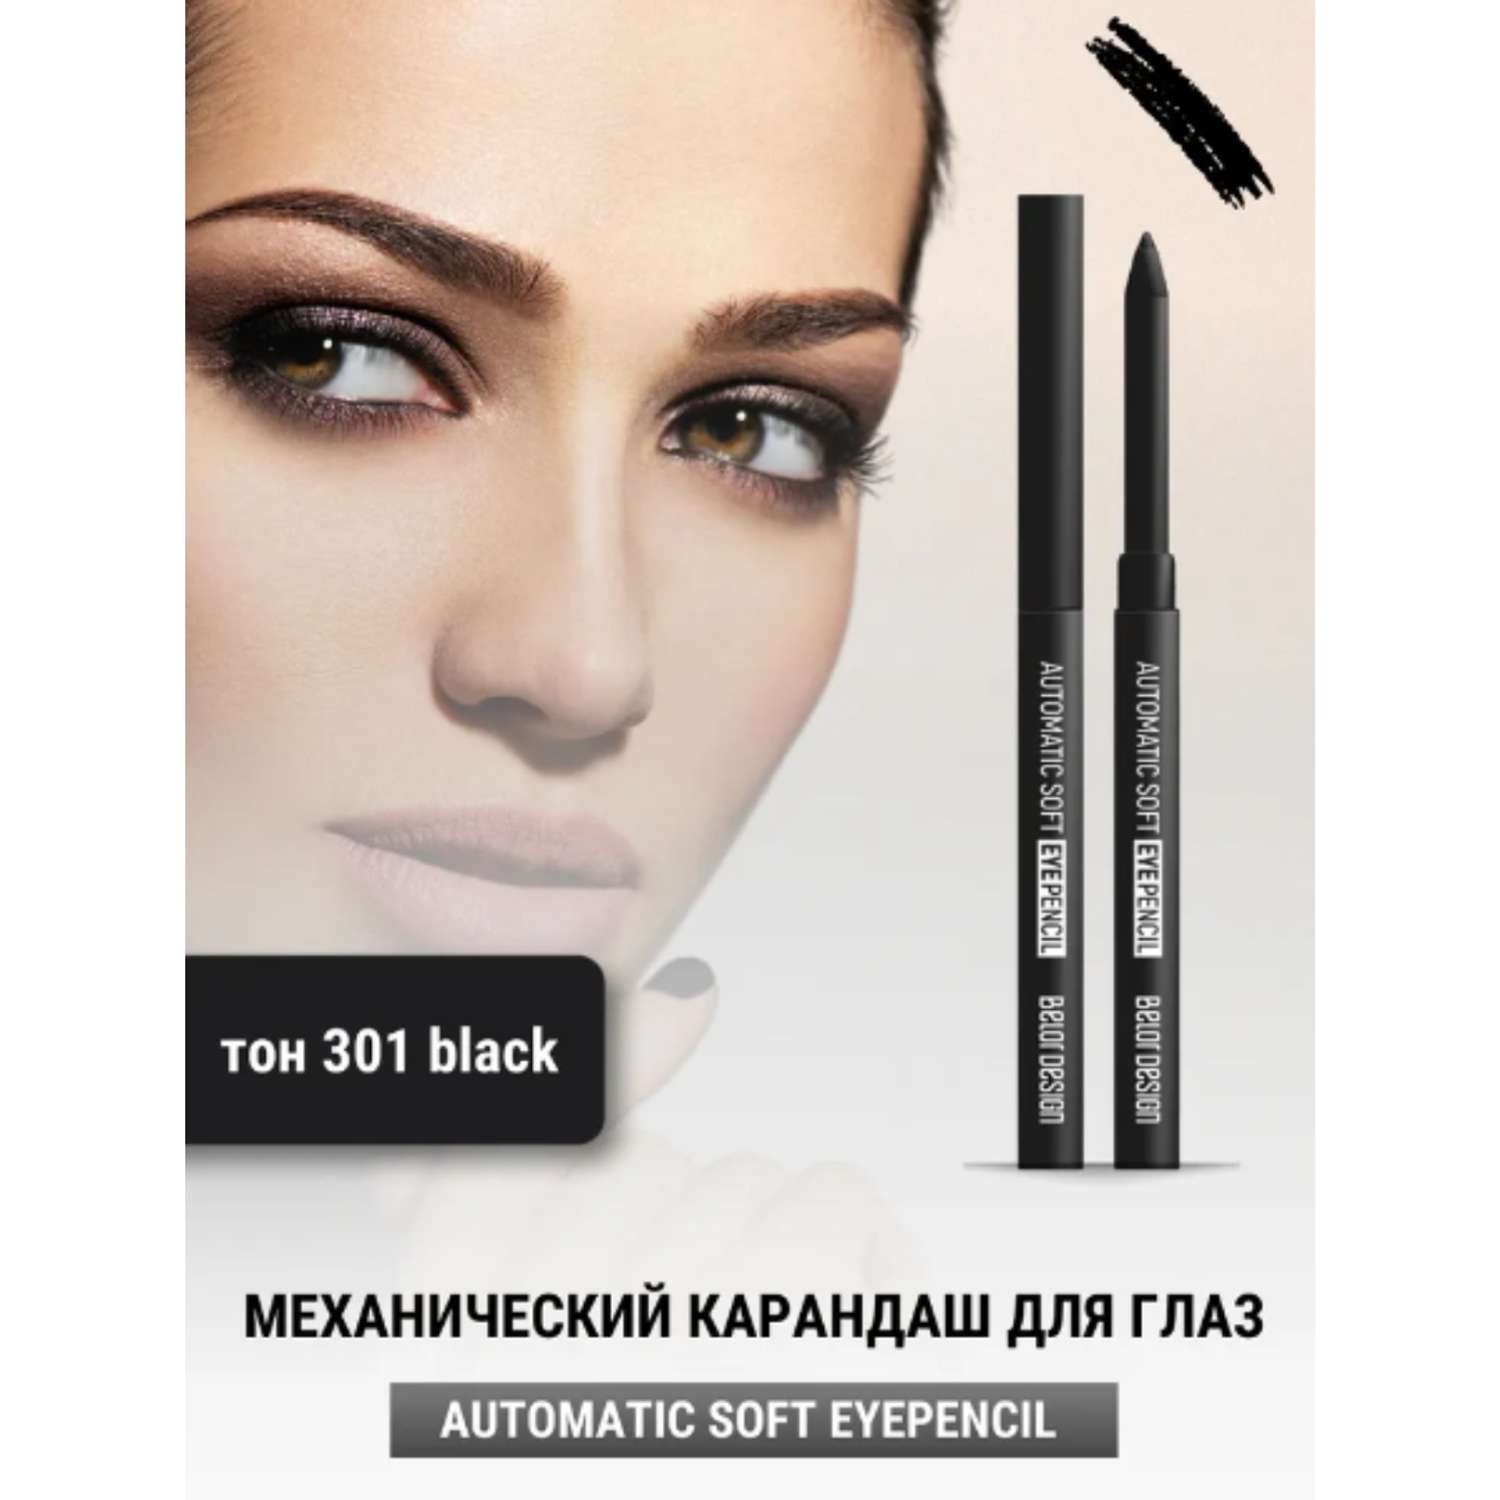 Карандаш для глаз Belor Design механический automatic soft eyepencil тон301 black - фото 2